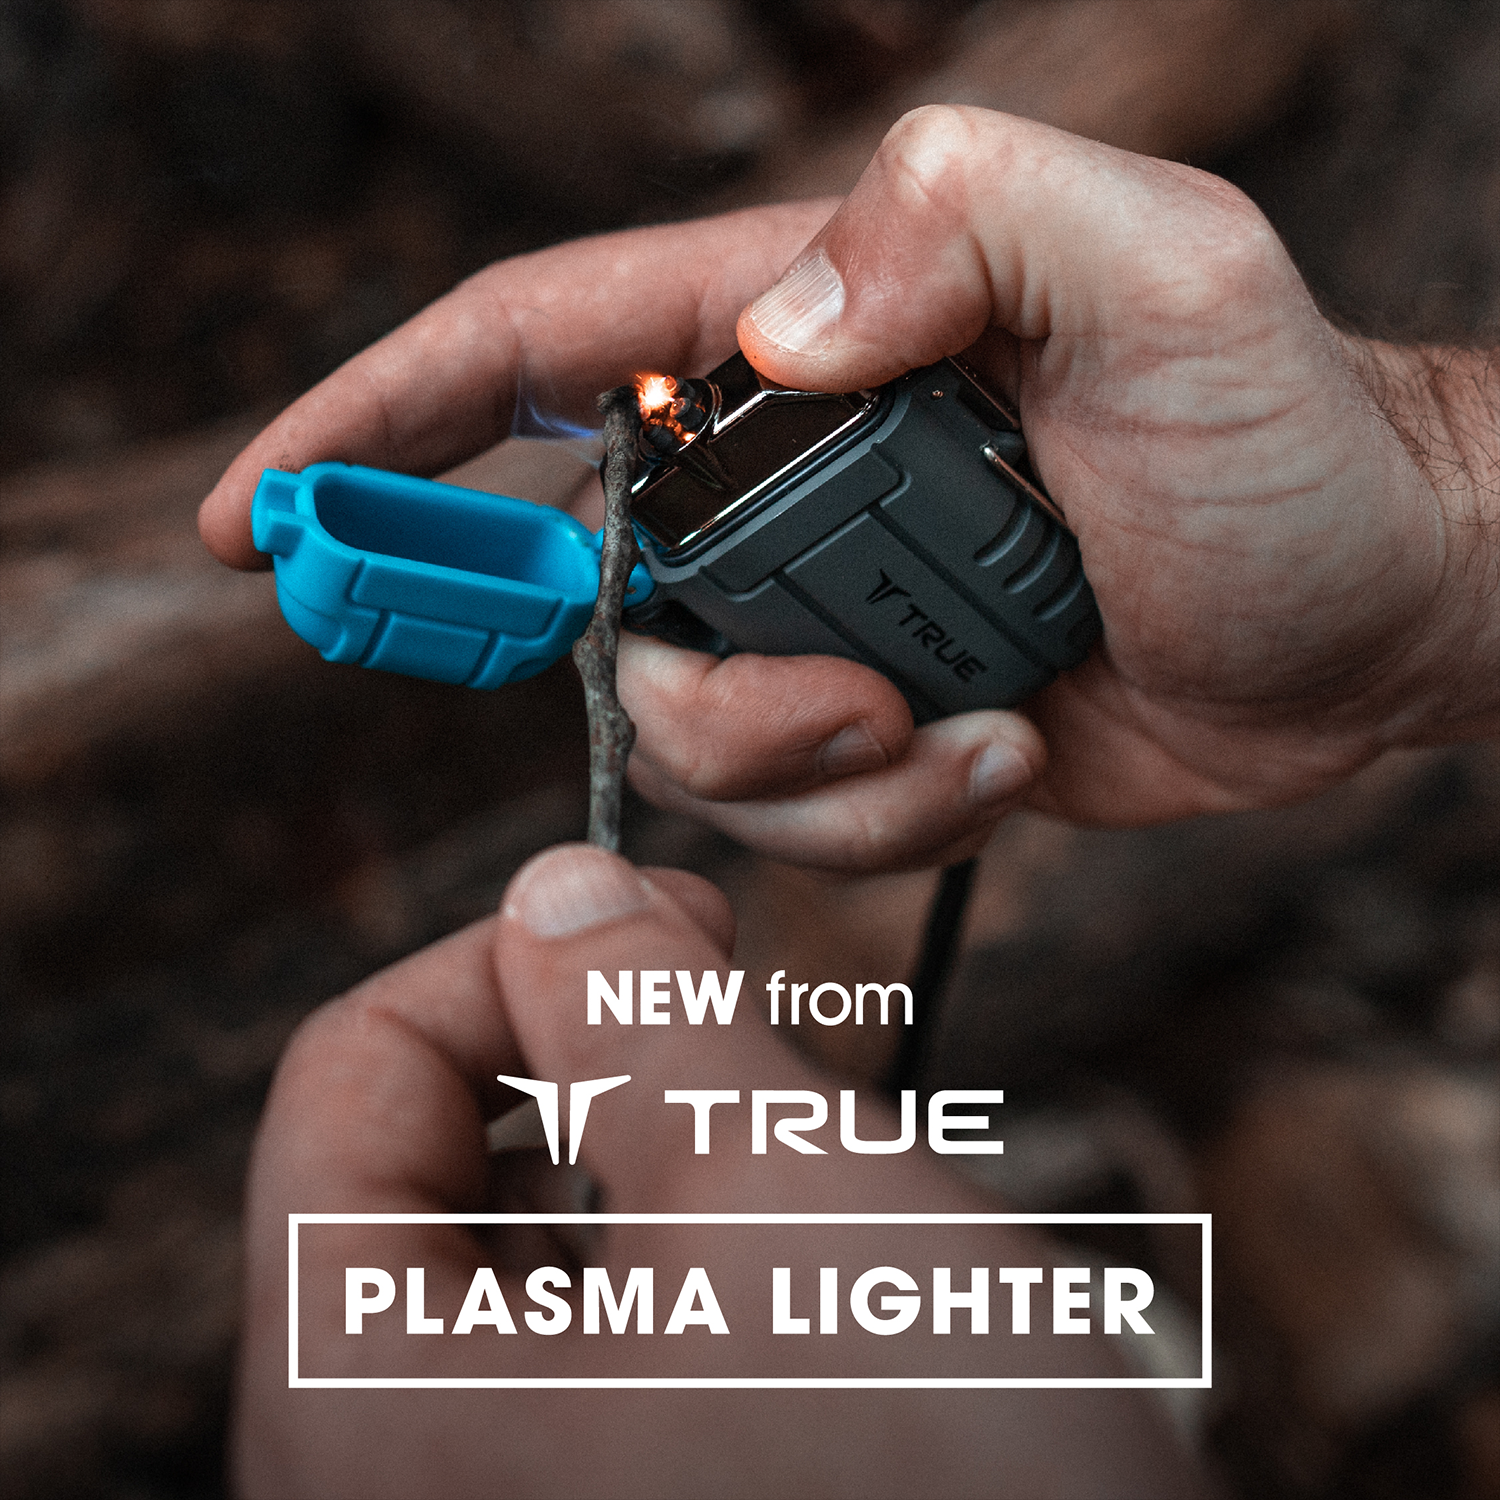 New from TRUE - Plasma Lighter